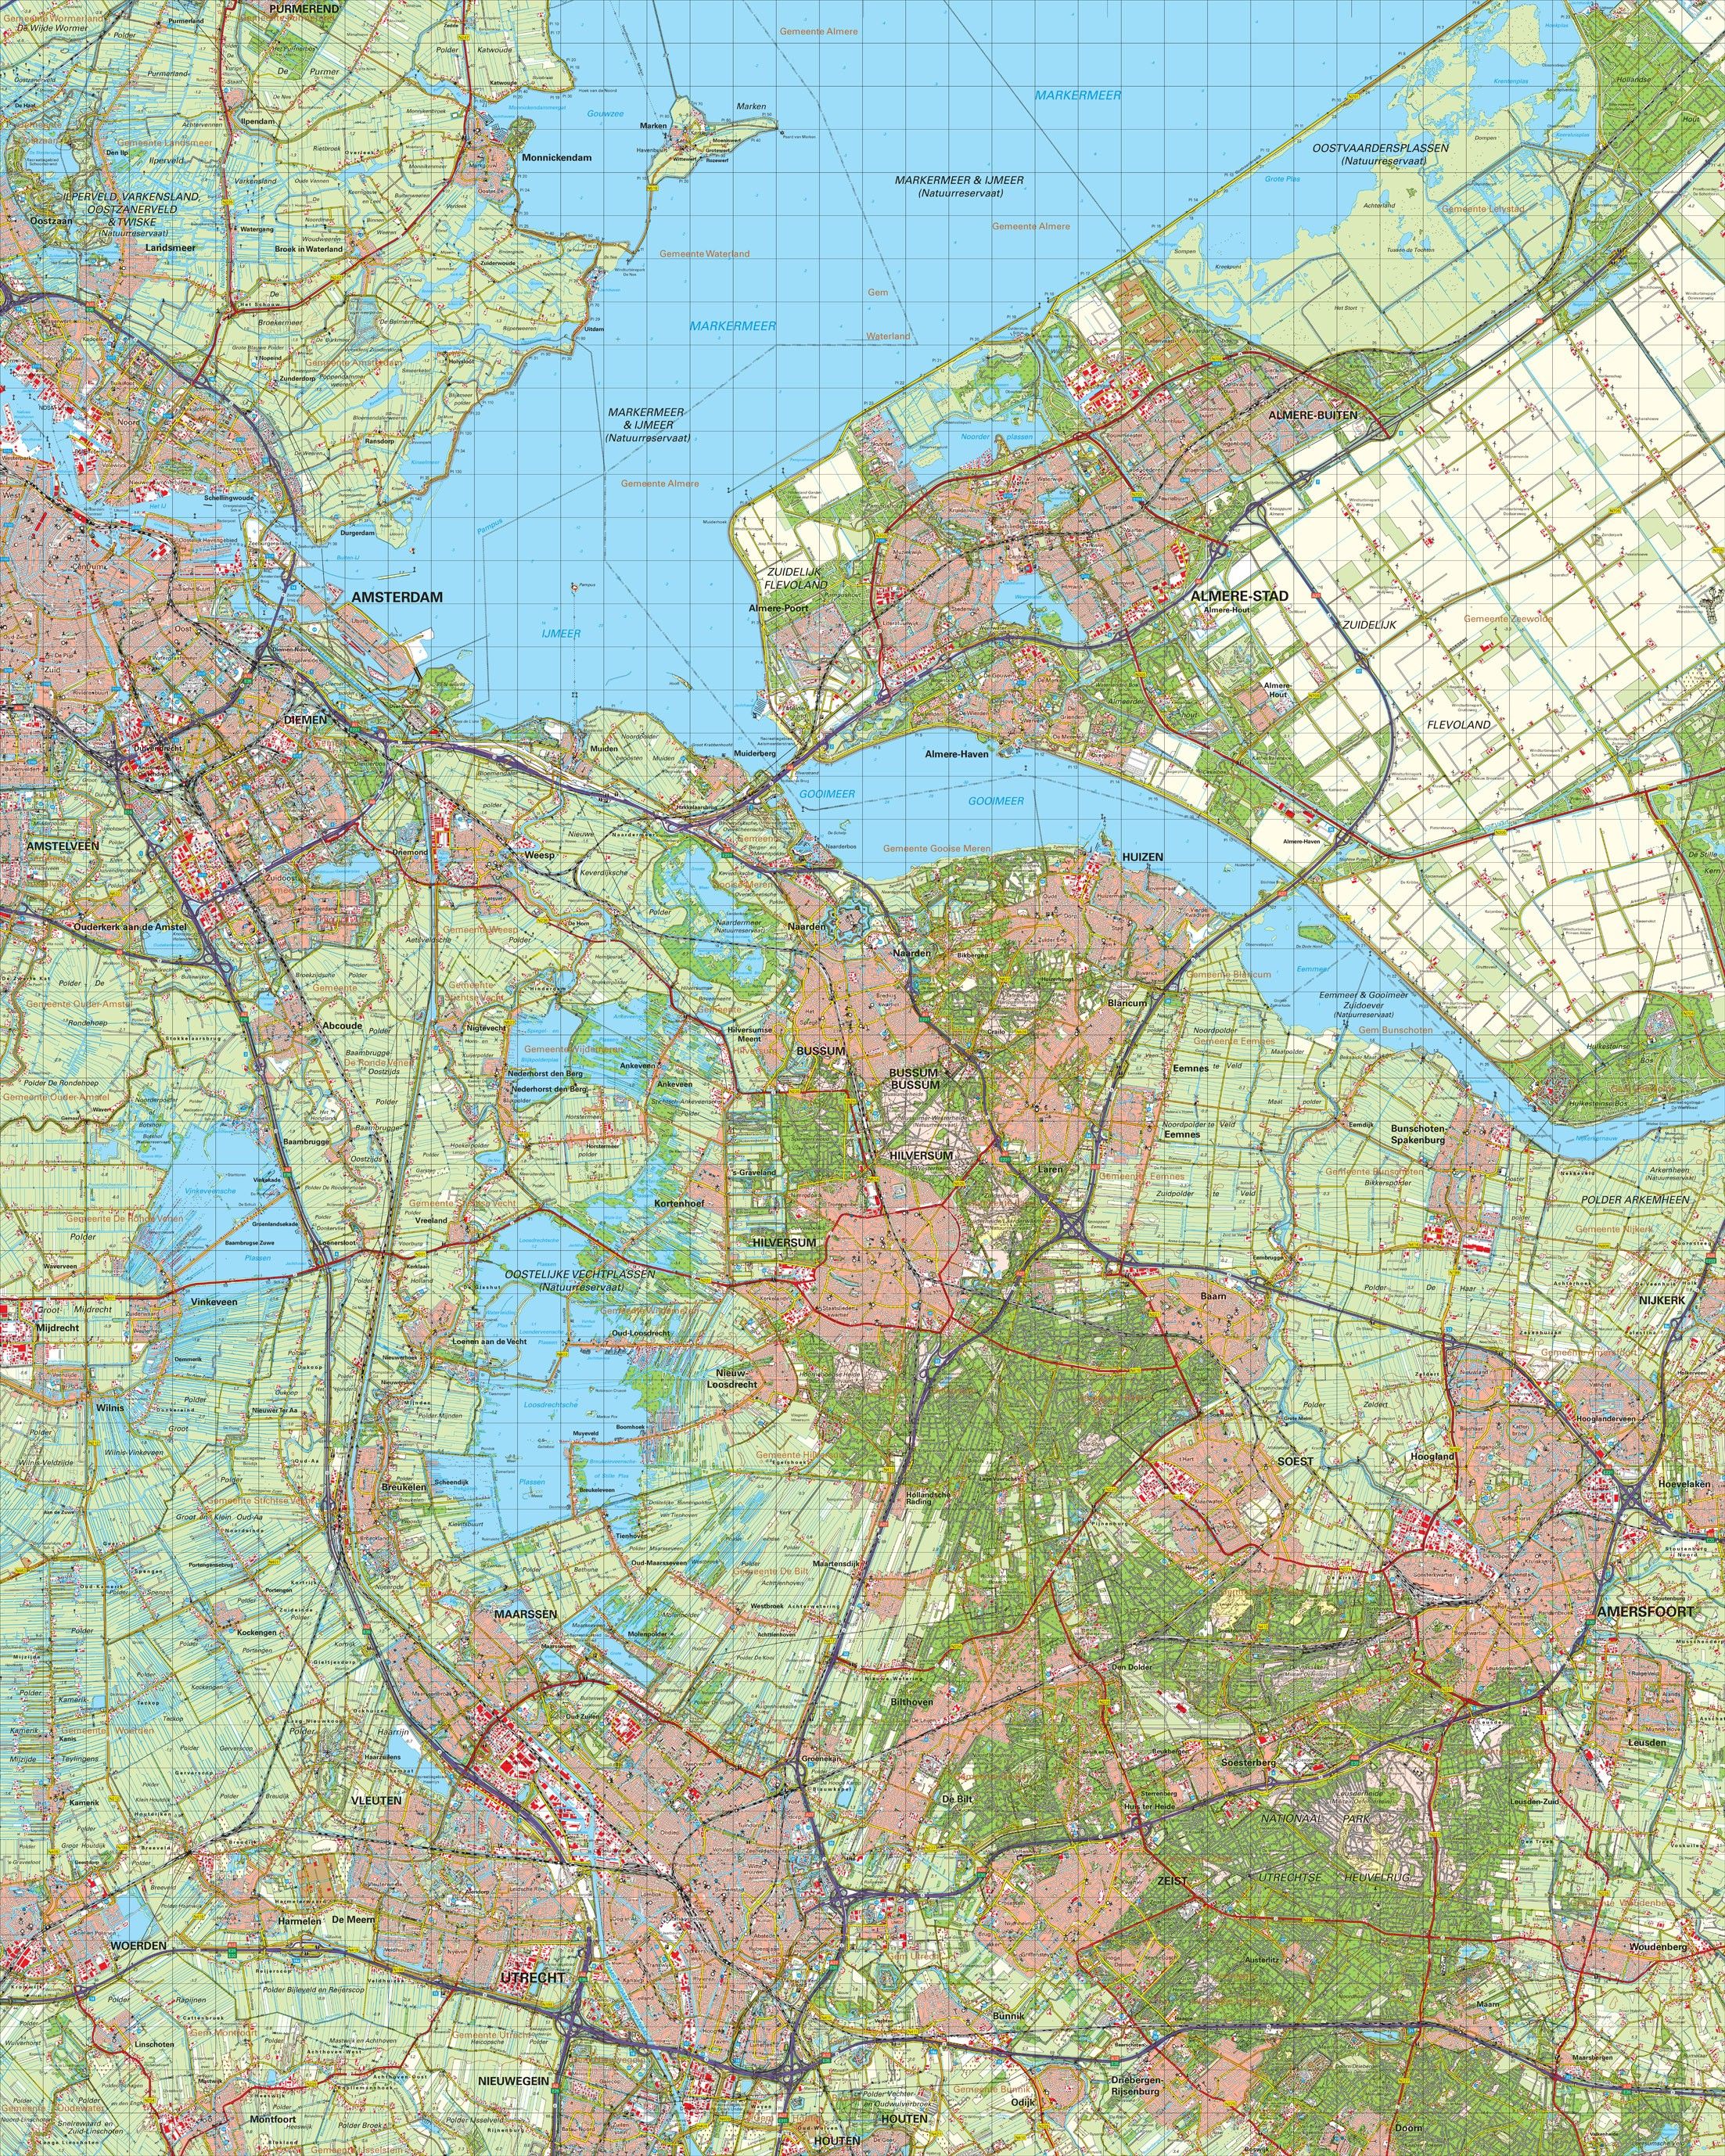 Koop Topografische kaart schaal 1:50.000 (Amsterdam, Almere, Hilversum, Amersfoort, Utrecht) voordelig bij COMMEE